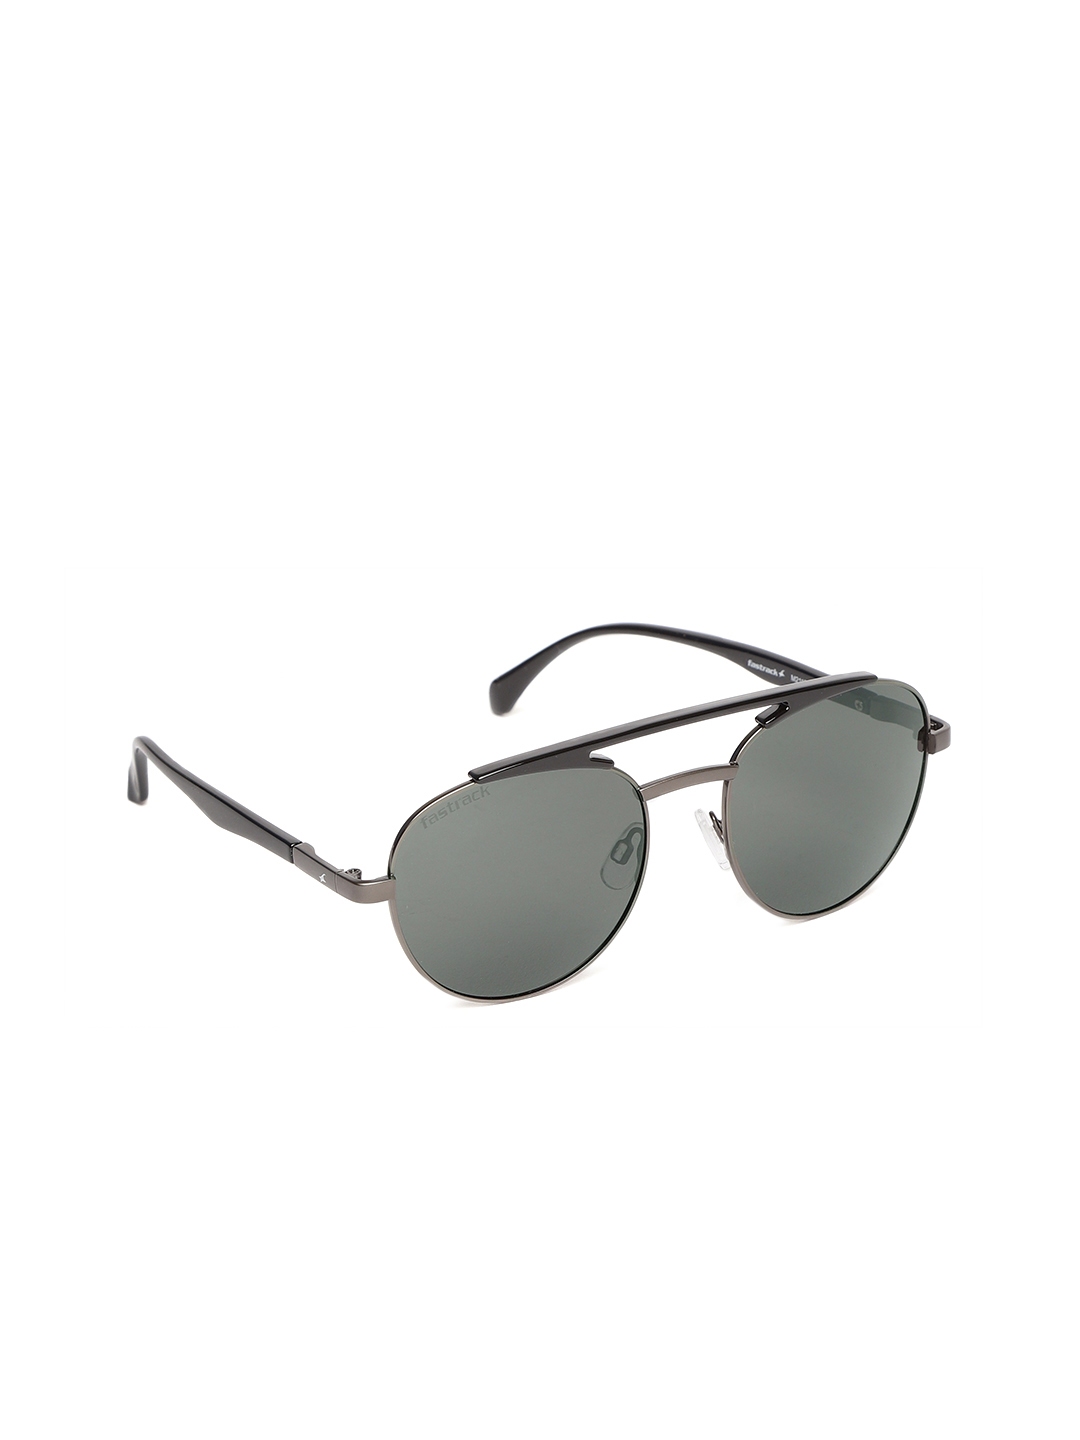 Buy Fastrack Men Oval Sunglasses M211BK3P - Sunglasses for Men 8456775